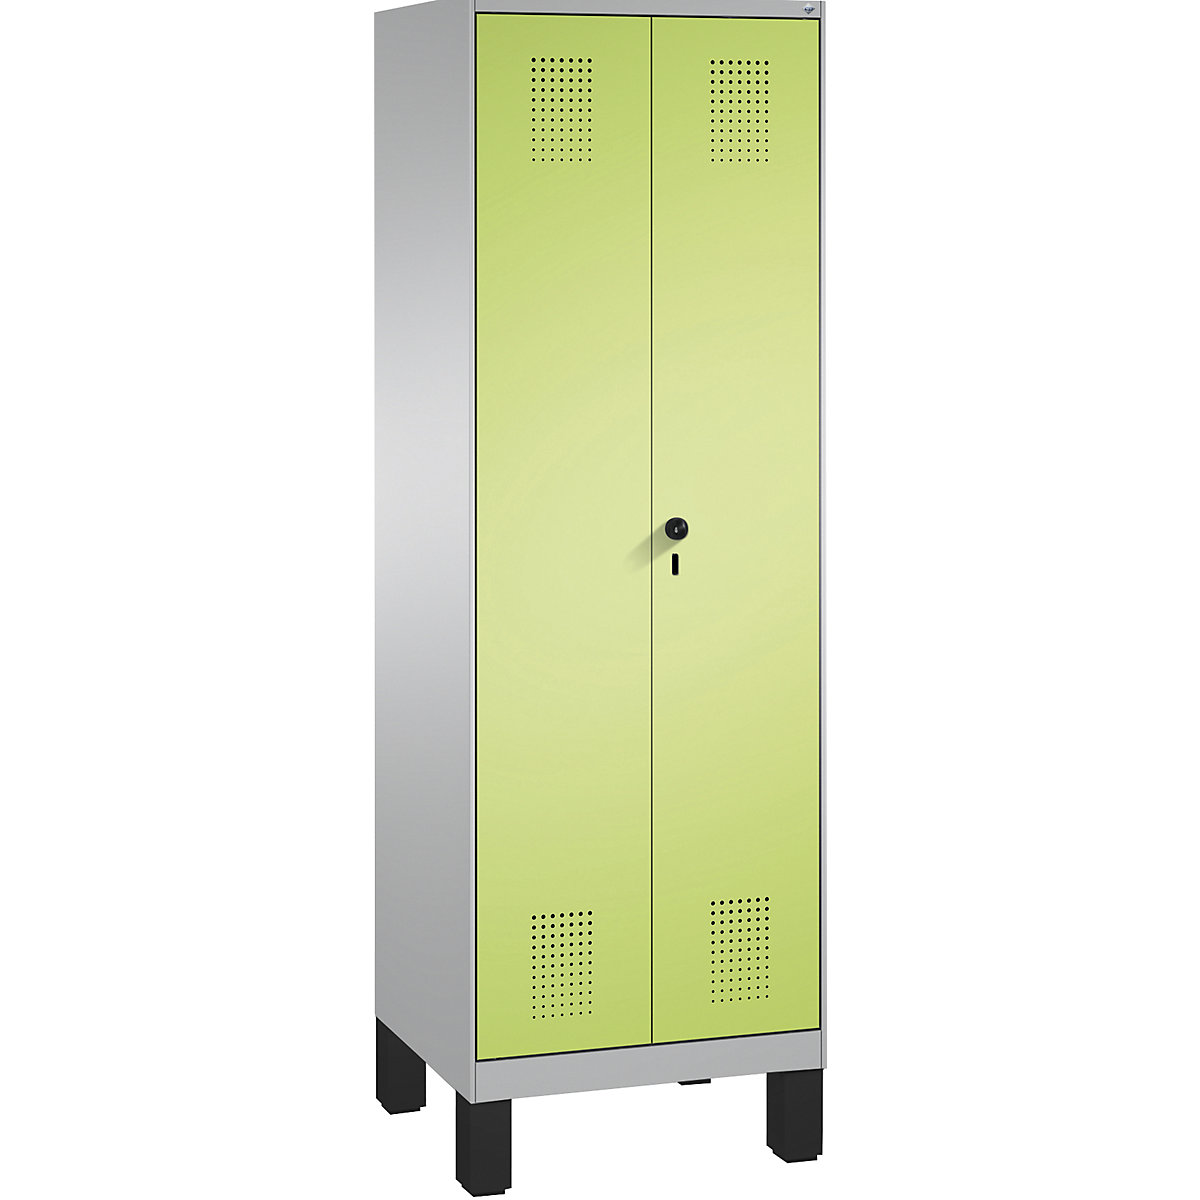 EVOLO takarítószer-/készüléktároló szekrény – C+P, rövidített válaszfal, 6 akasztó, rekeszek 2 x 300 mm, lábakkal, fehéralumínium / viridinzöld-5